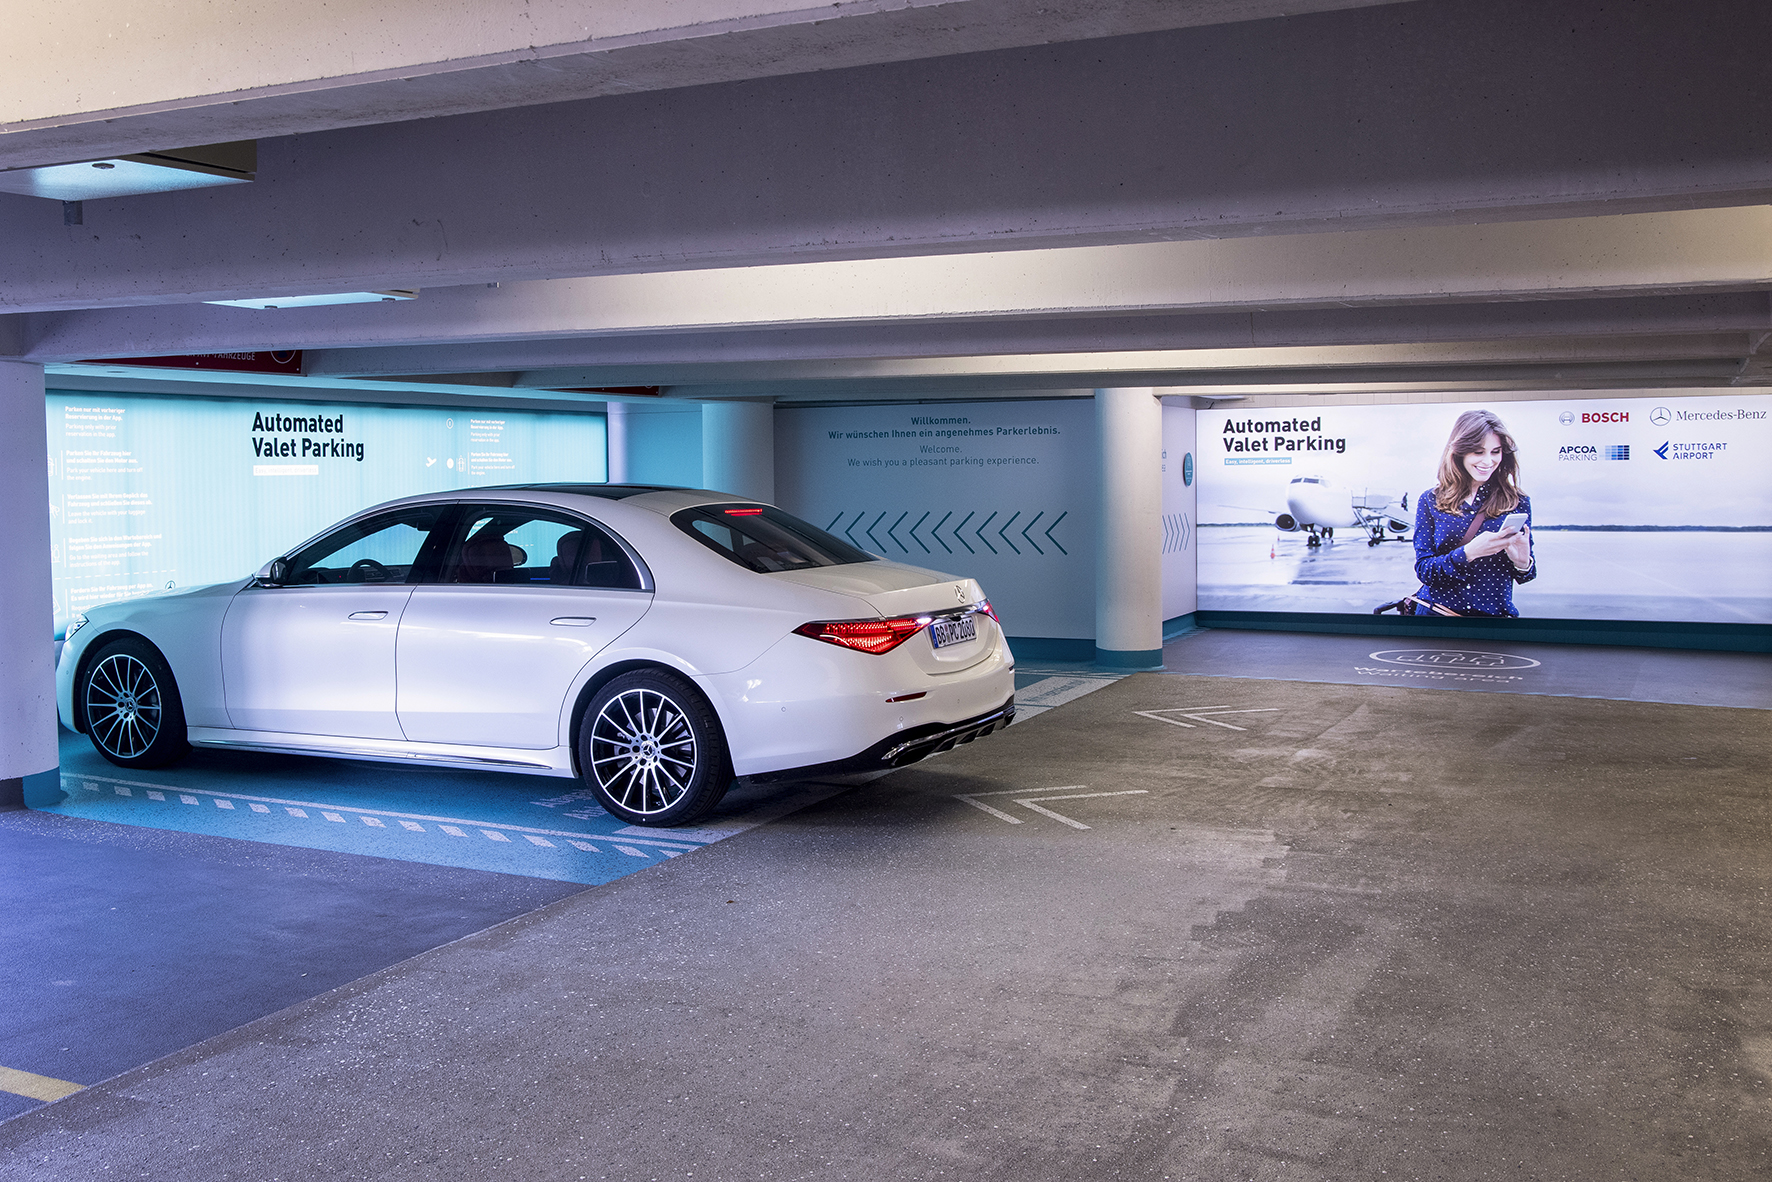 Společnosti Apcoa, Bosch a Mercedes-Benz pracují na poskytování první služby komerčního automatizovaného parkování na světě (AVP) na letišti ve Stuttgartu